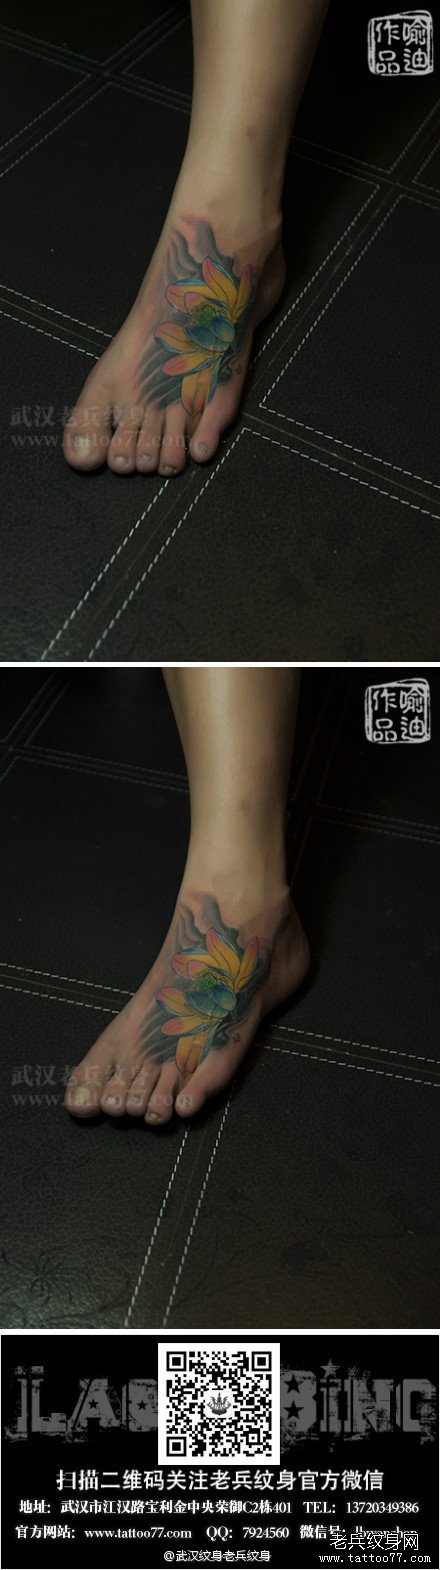 为一纹身妹子制作的脚背莲花纹身图案作品遮盖疤痕